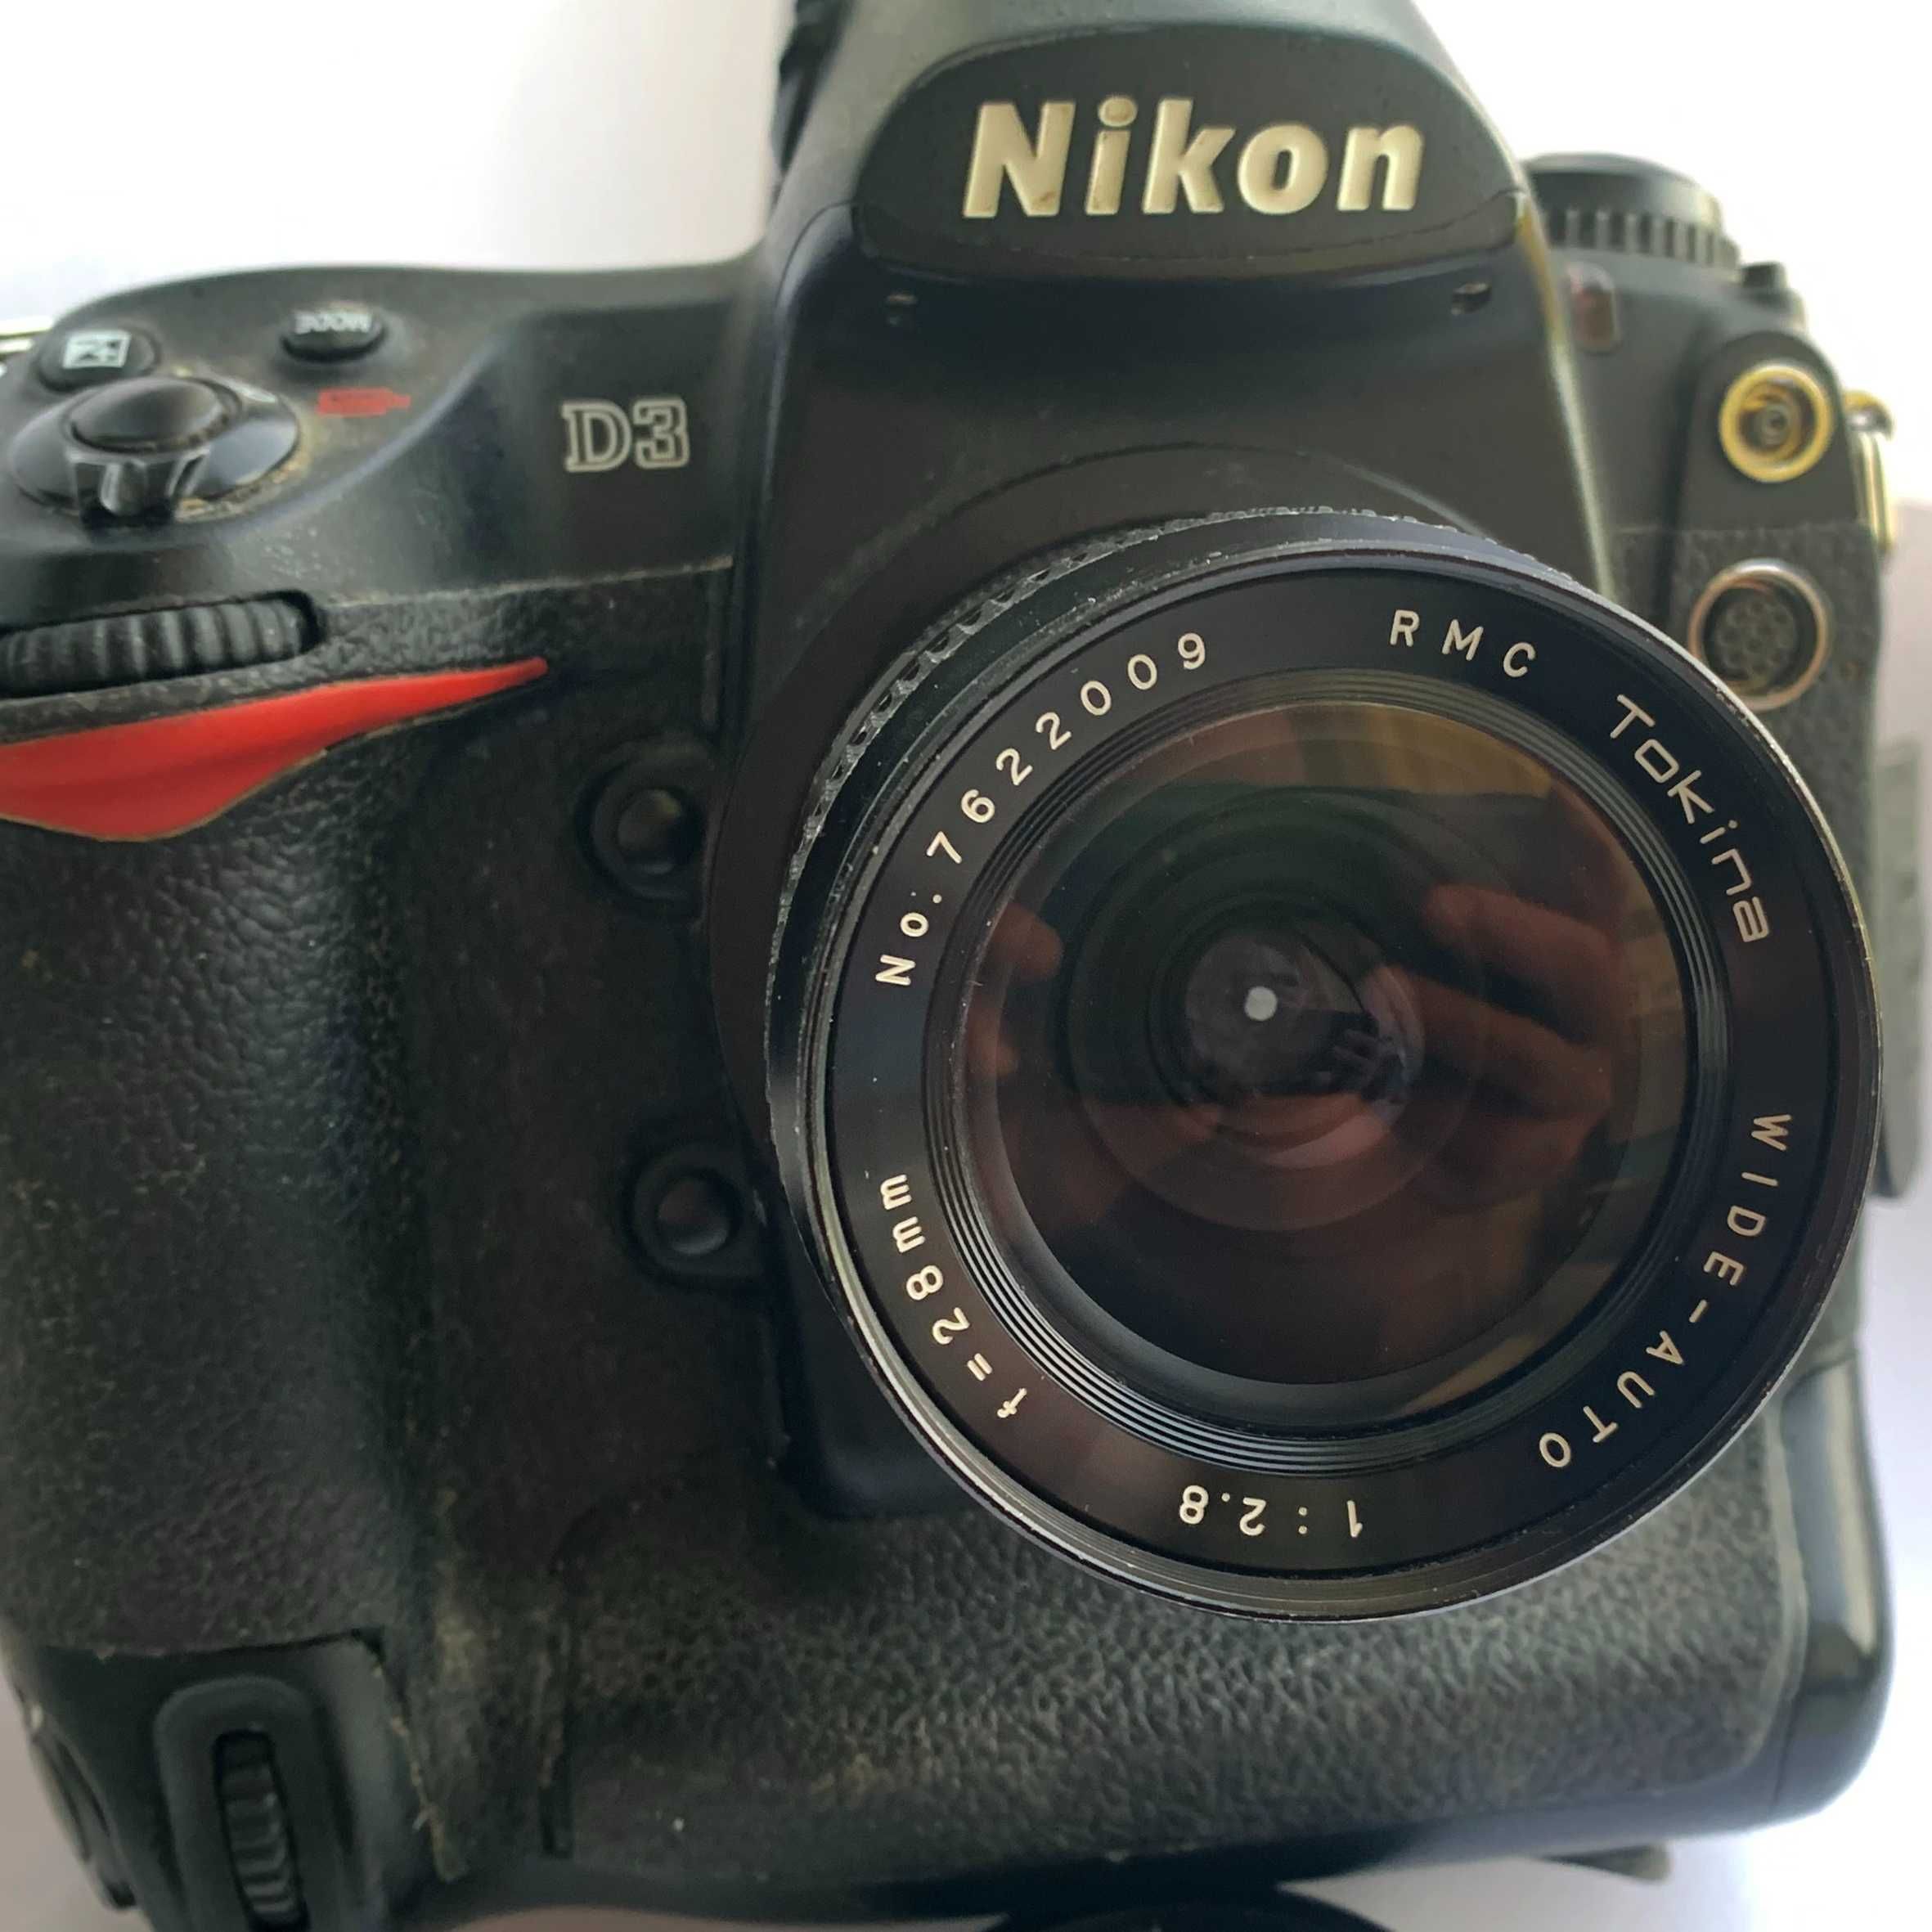 Tokina RMC 28mm/f2.8-16  для  Nikon c Одуванчиком Лушникова.